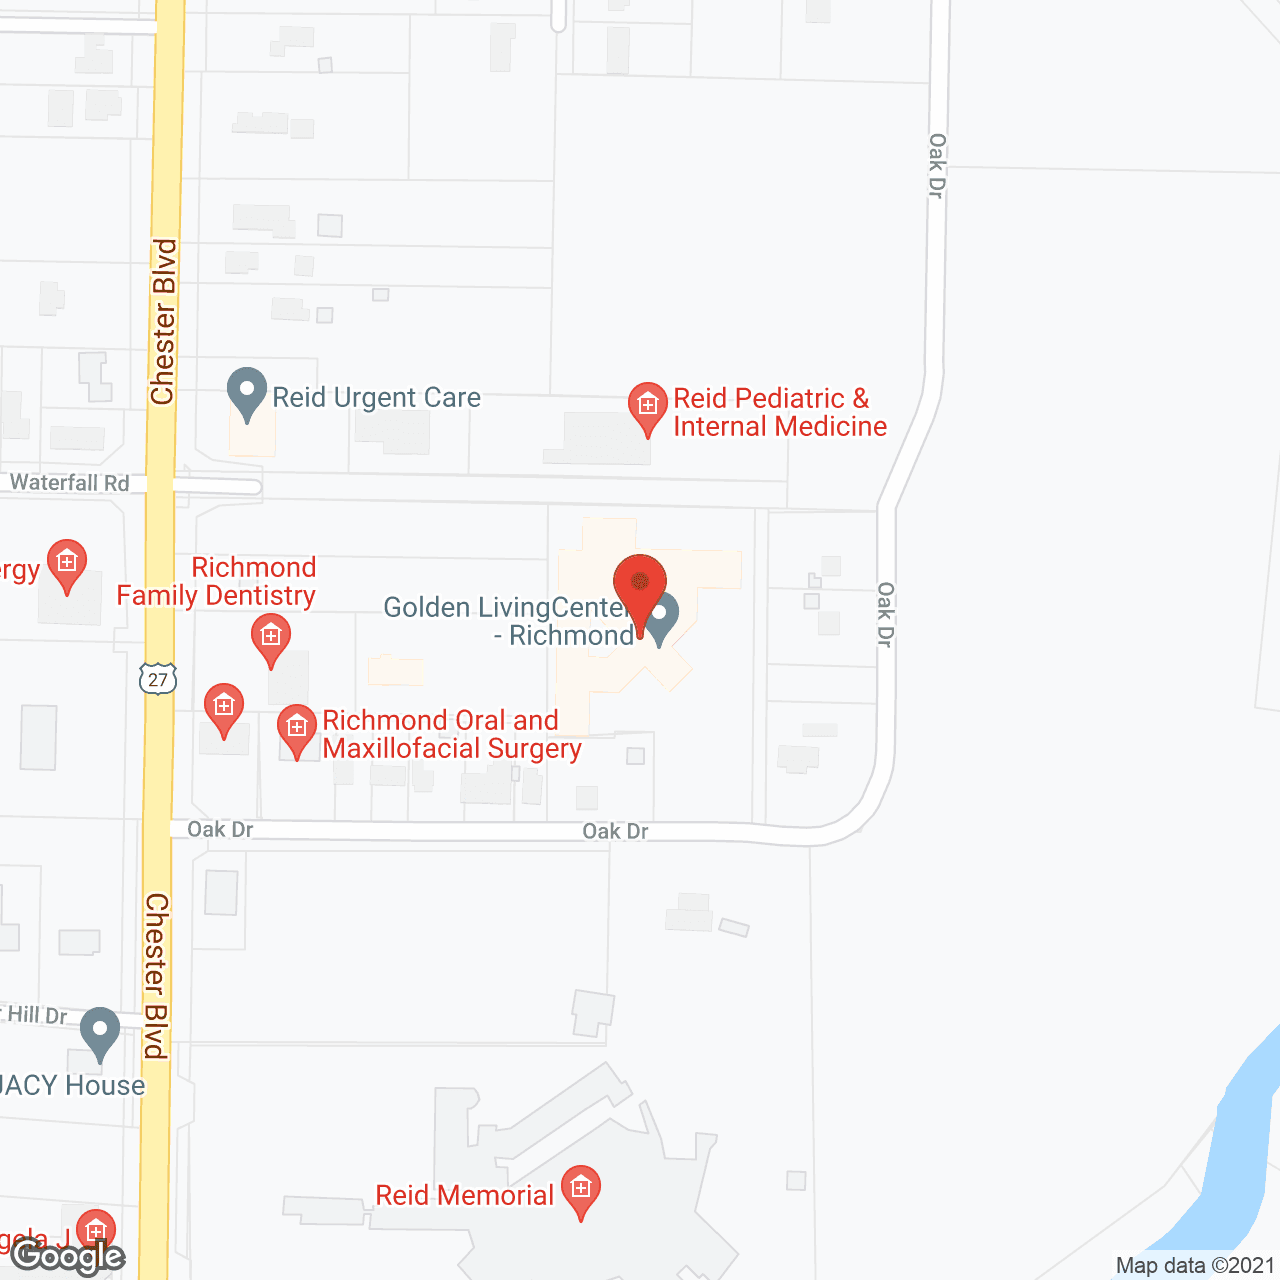 Golden LivingCenter - Richmond in google map